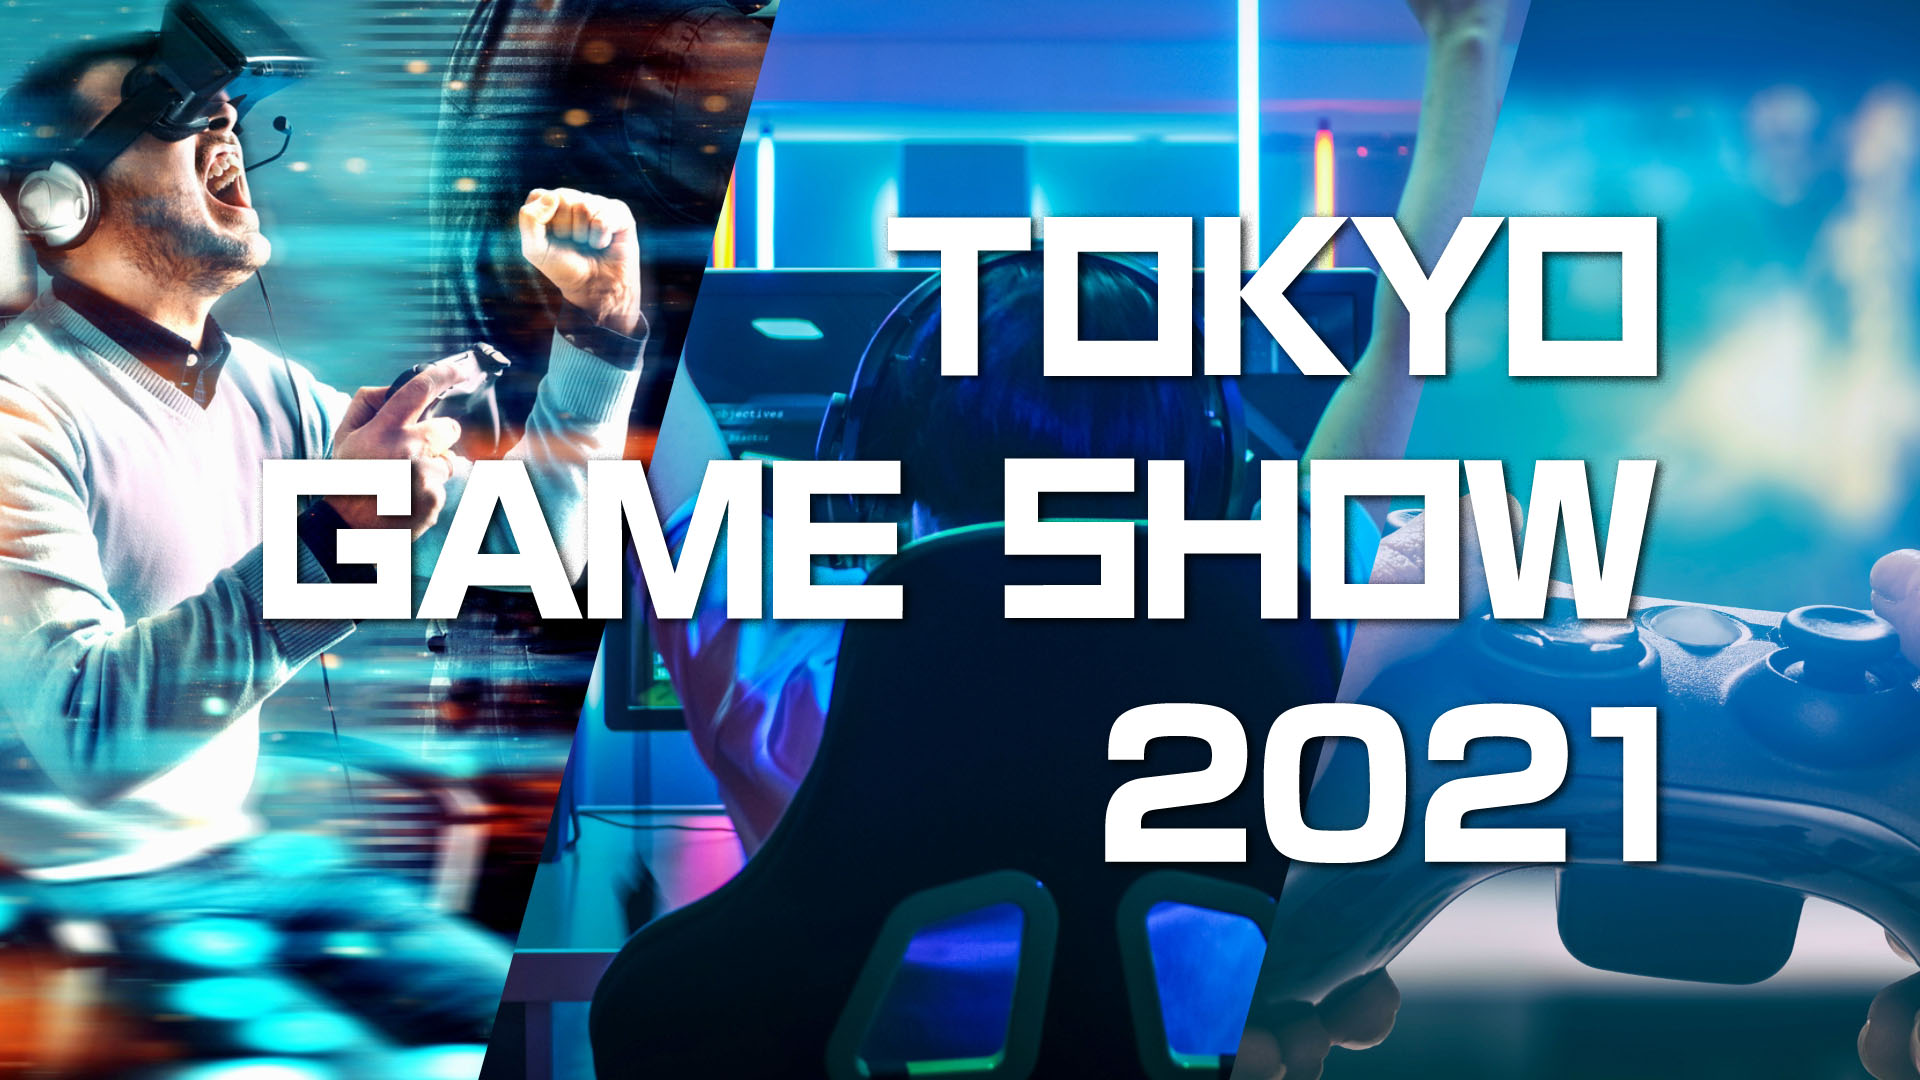 ٹوکیو گیم شو 2021 کے لیے صرف آن لائن ہے۔